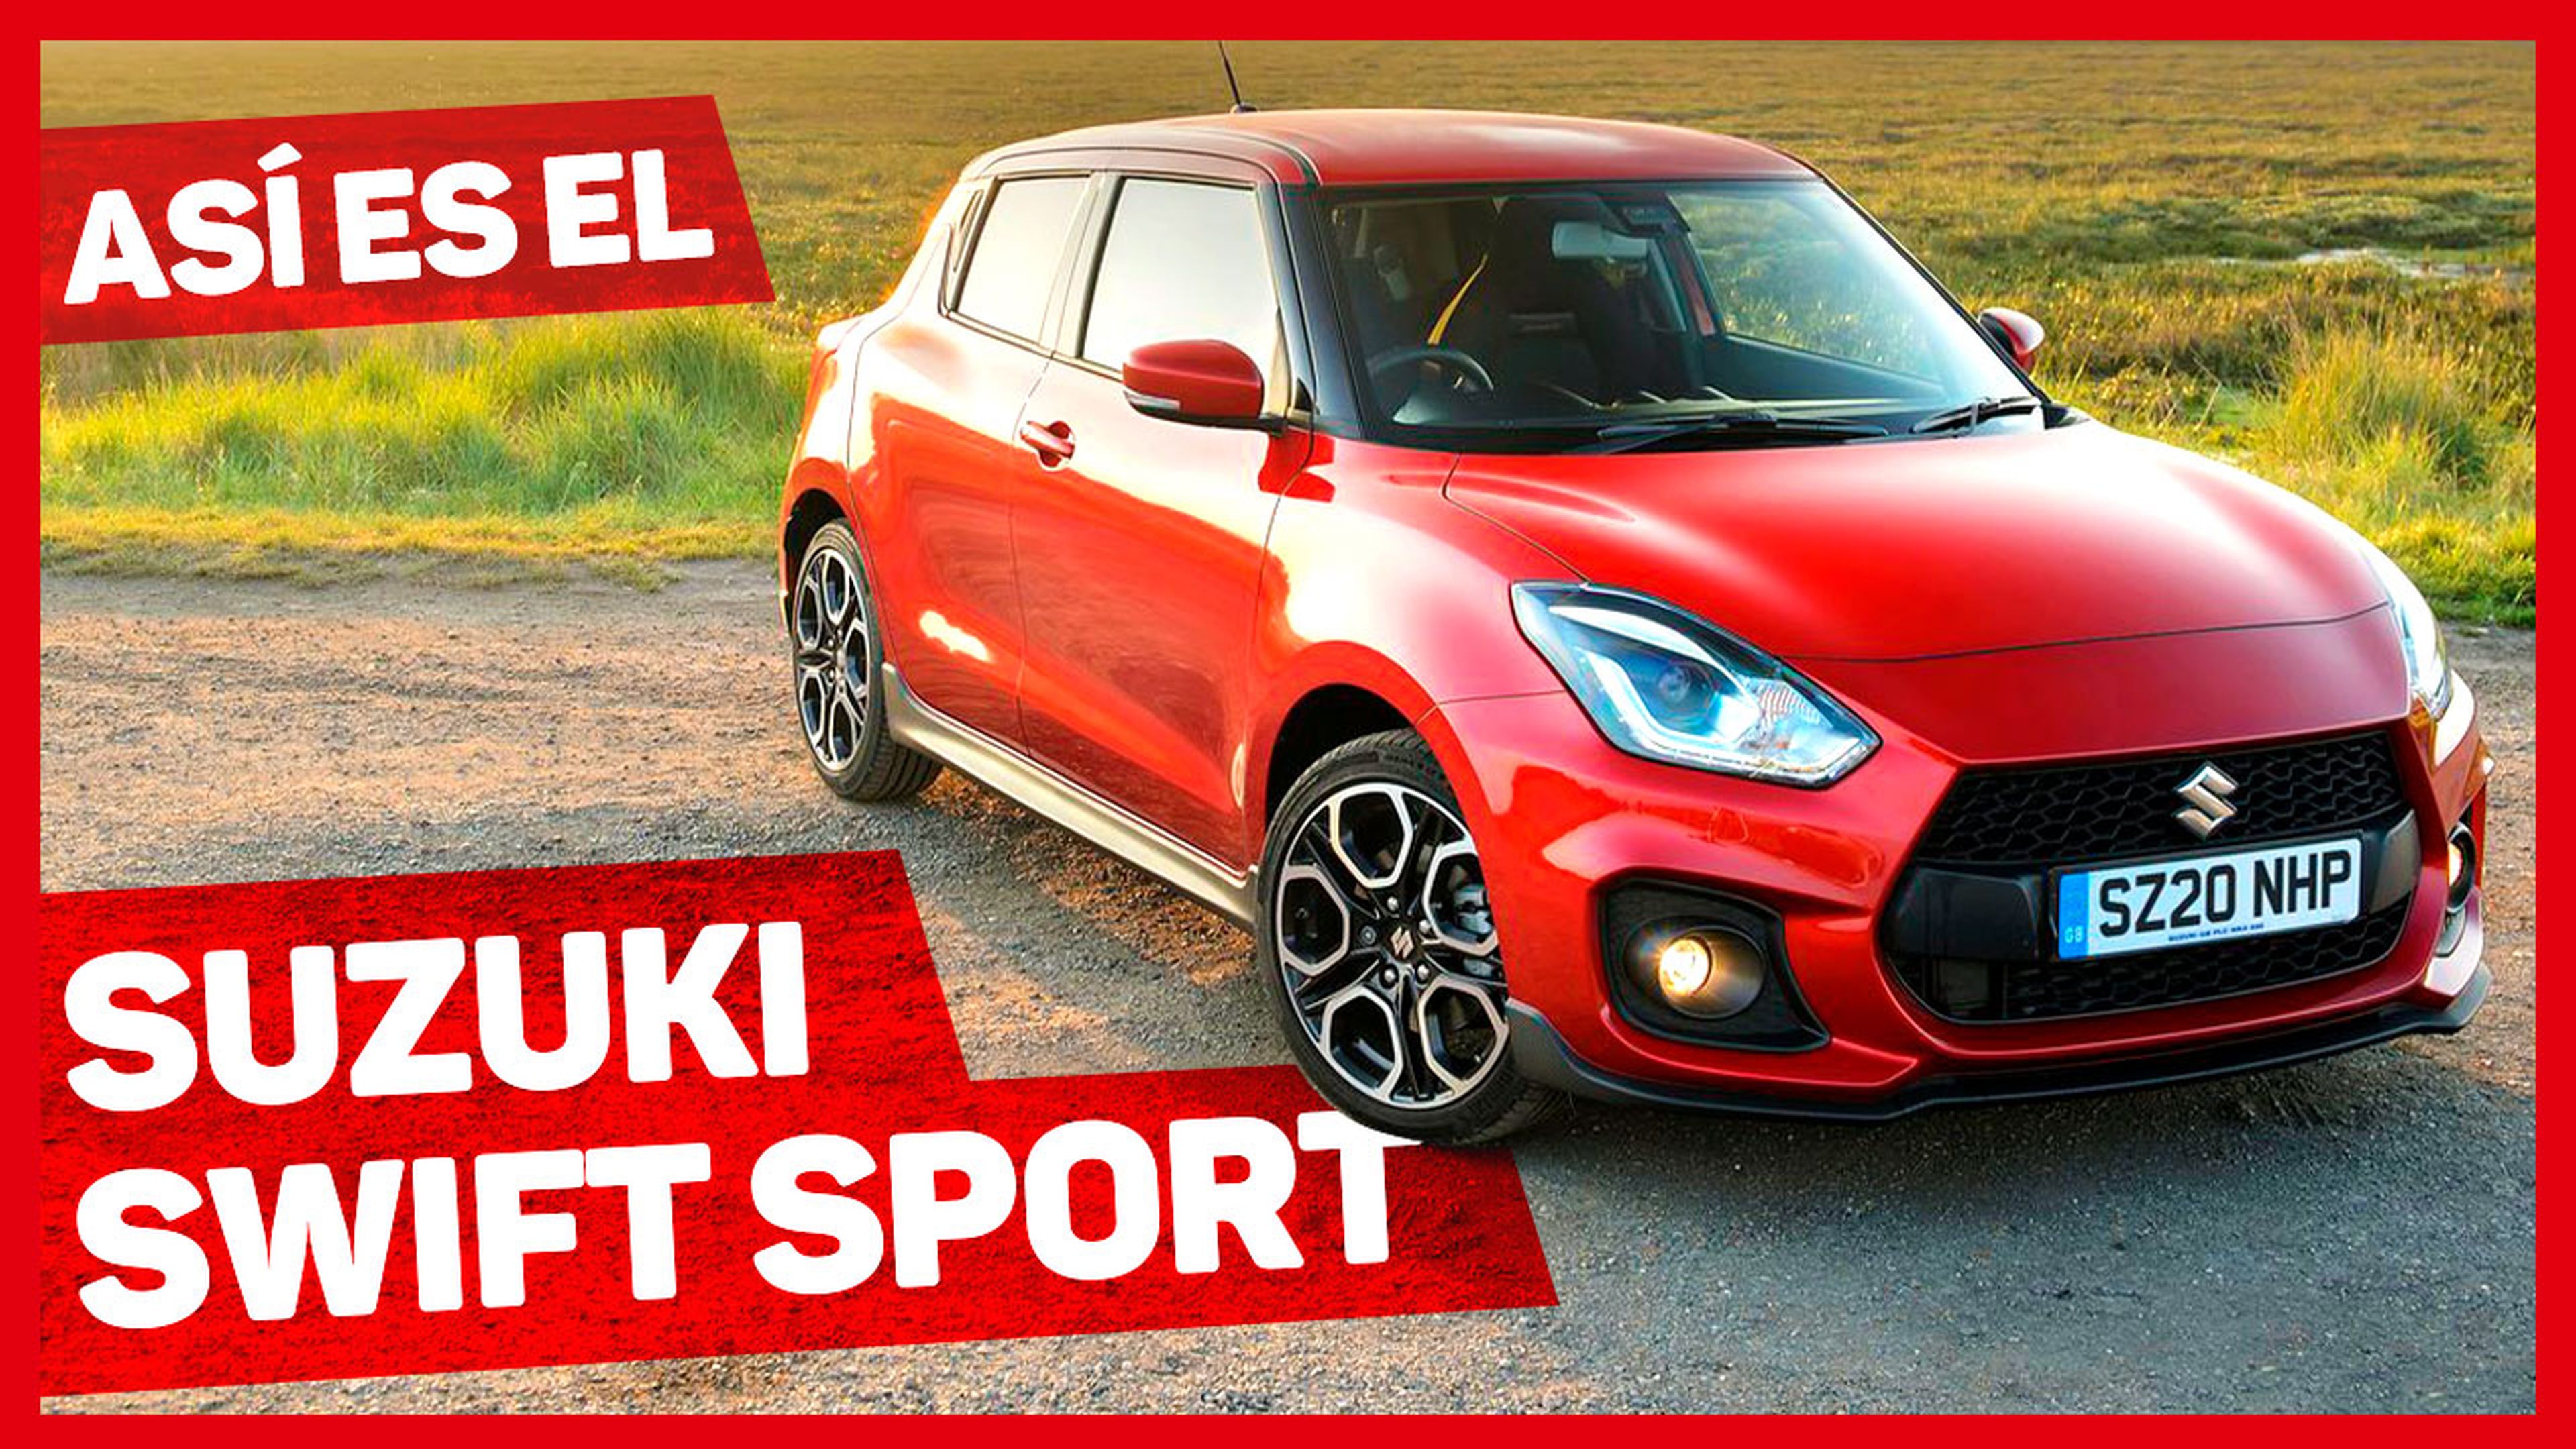 VÍDEO: Suzuki Swift Sport 2020, menos potente, igual de divertido